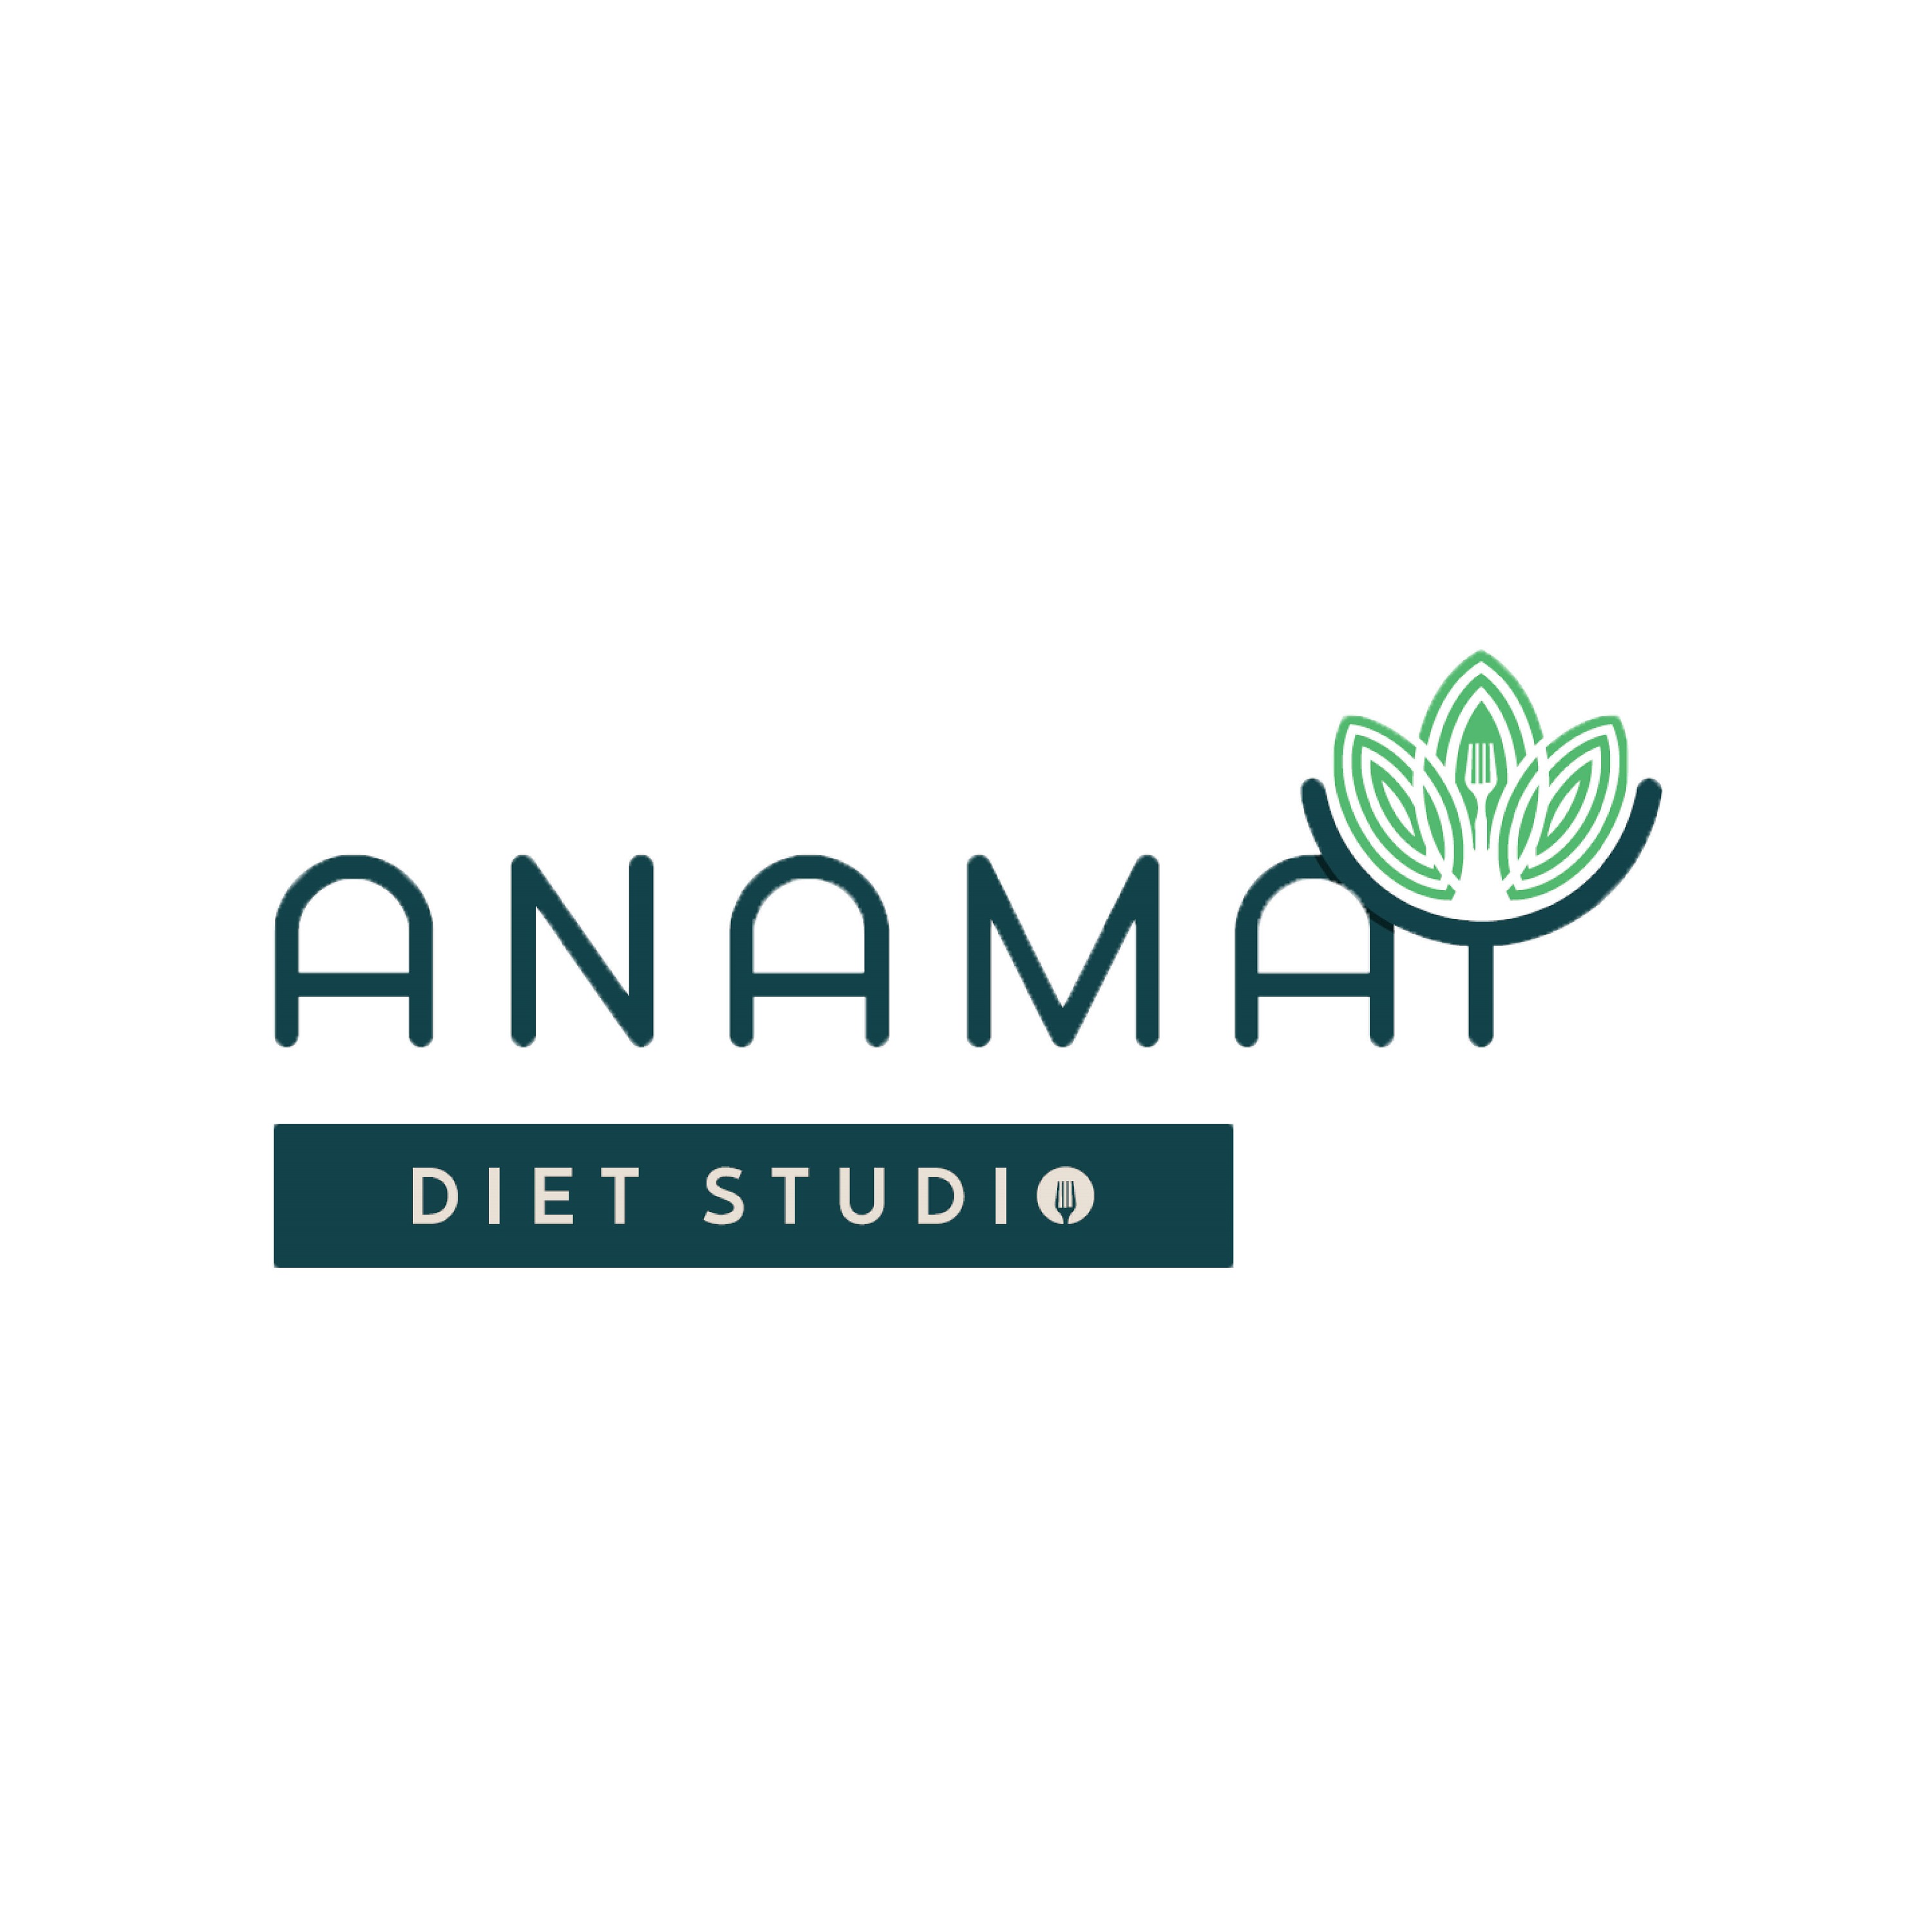 Anamay Diet Studio - Logo